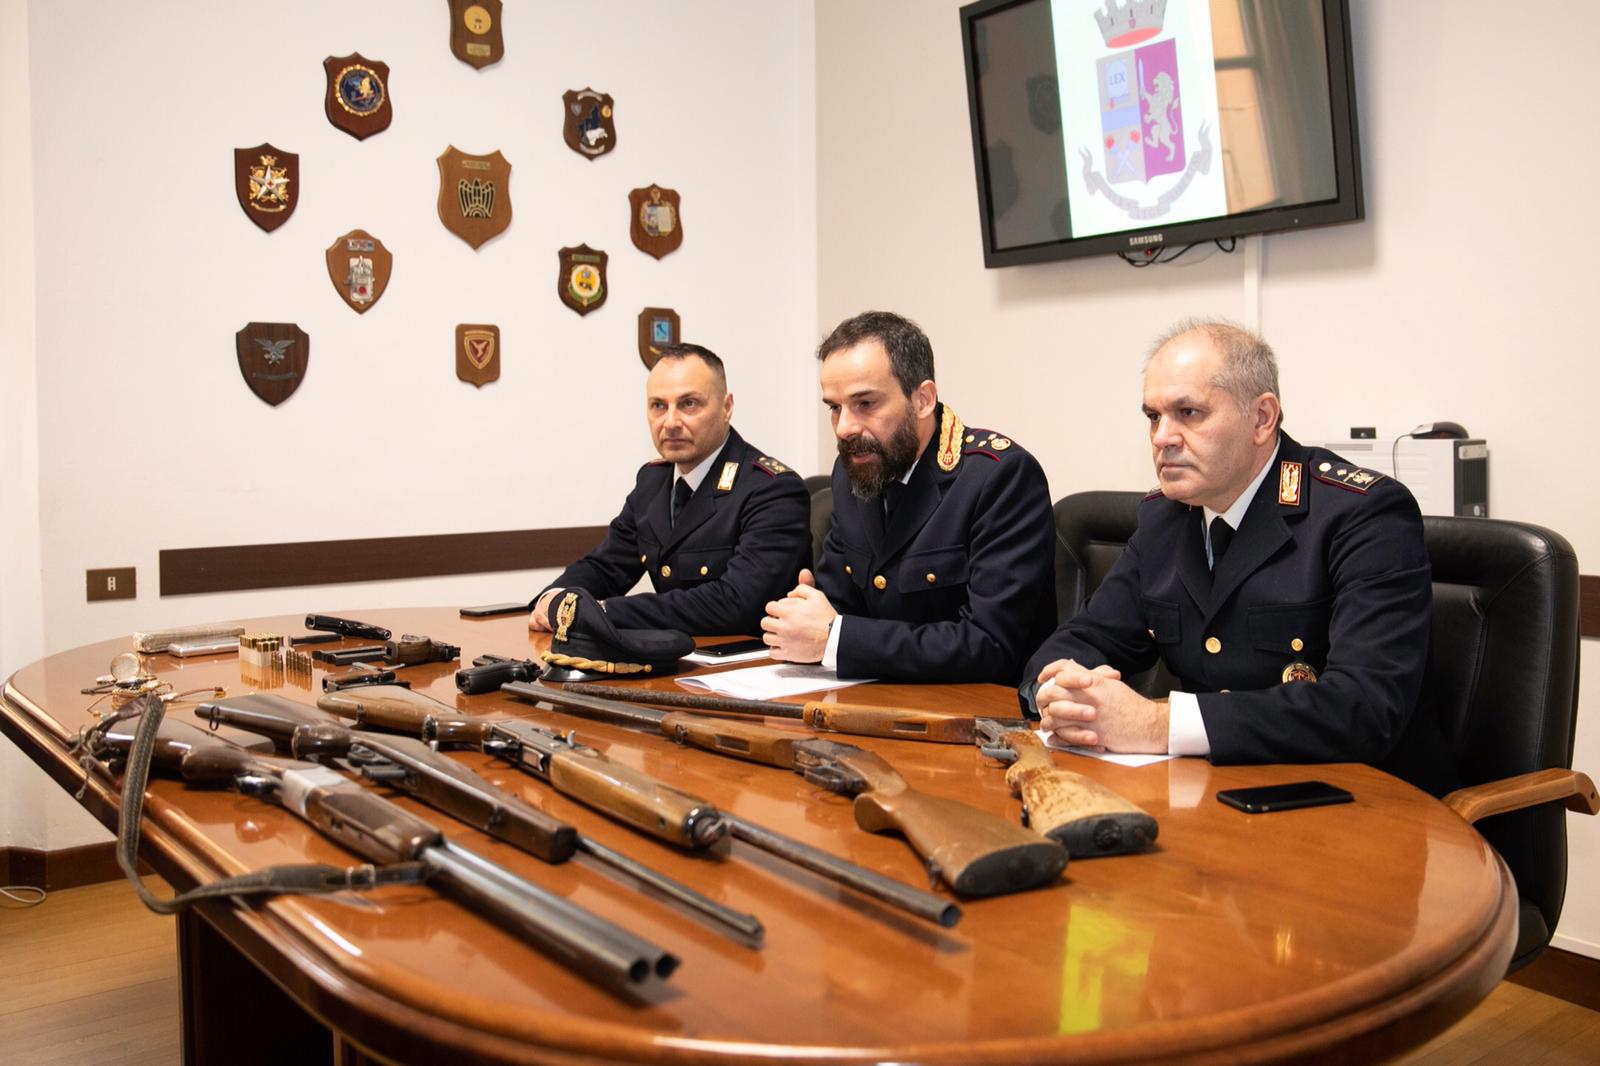 Trovato con armi e droga: la polizia di stato arresta un cittadino albanese incensurato